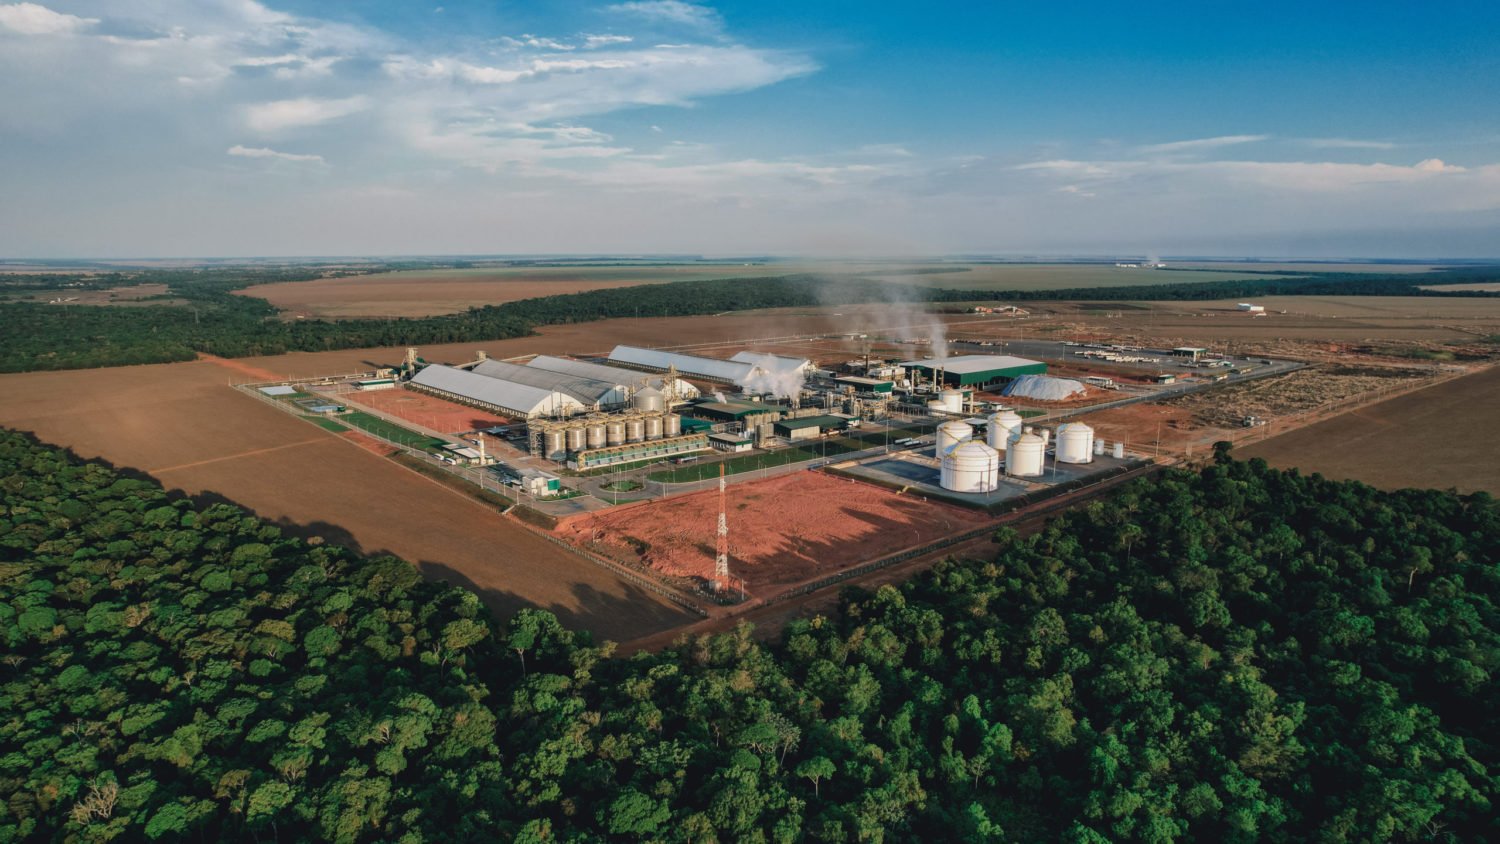 BECCS: Biomassa com captura de carbono na descarbonização brasileira. Na imagem: Vista aérea das instalações e tanques de armazenamento na usina de etanol de milho da FS, em Sorriso, no Mato Grosso (Foto: Divulgação FS Bioenergia)